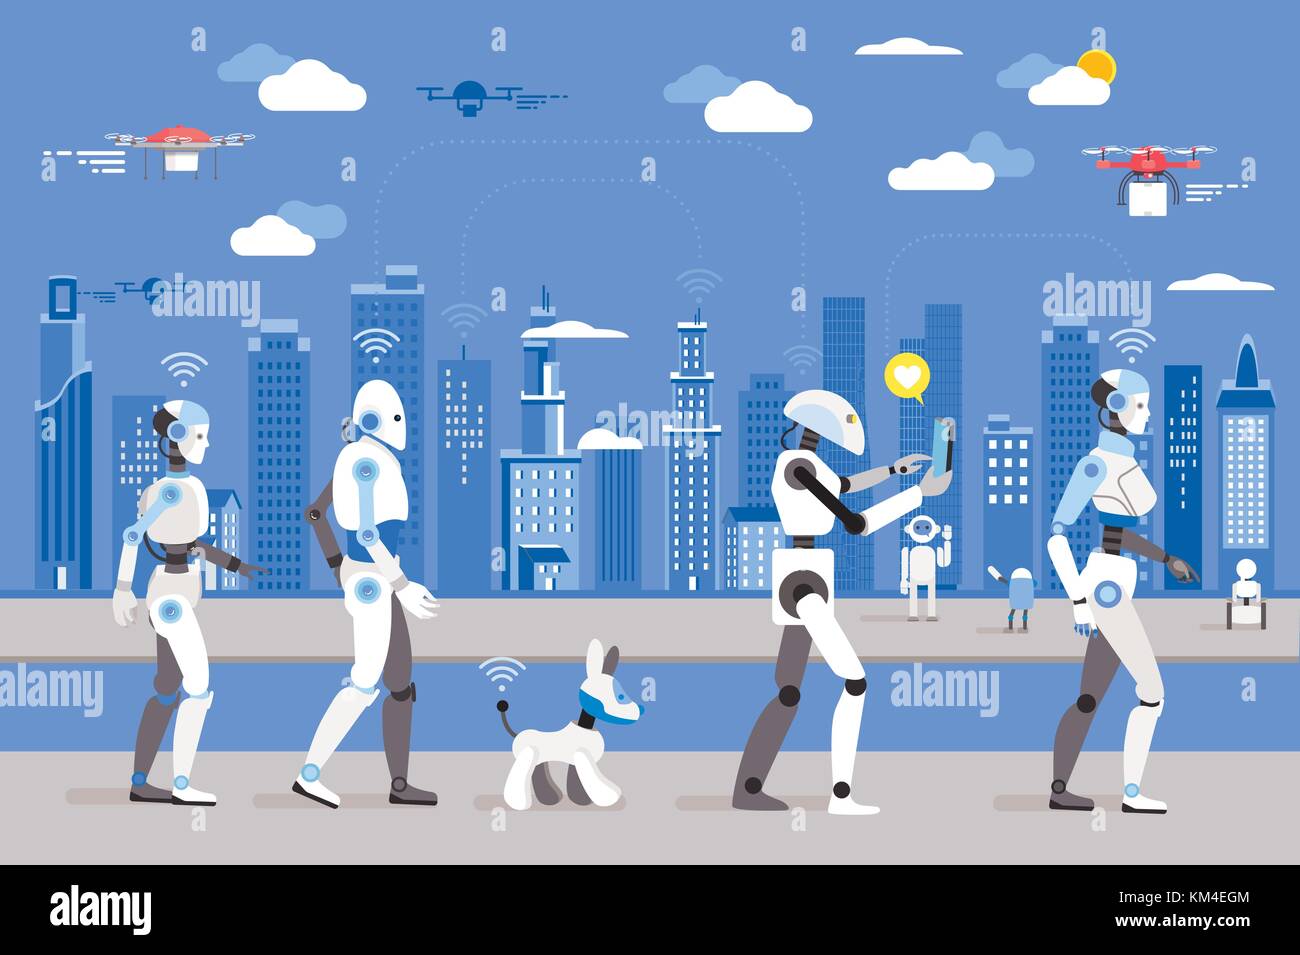 Android robots y un perro robot caminando en una ciudad futurista. Imagen futurista de un futuro cercano. Android robots vuelan en el cielo. Ilustración del Vector